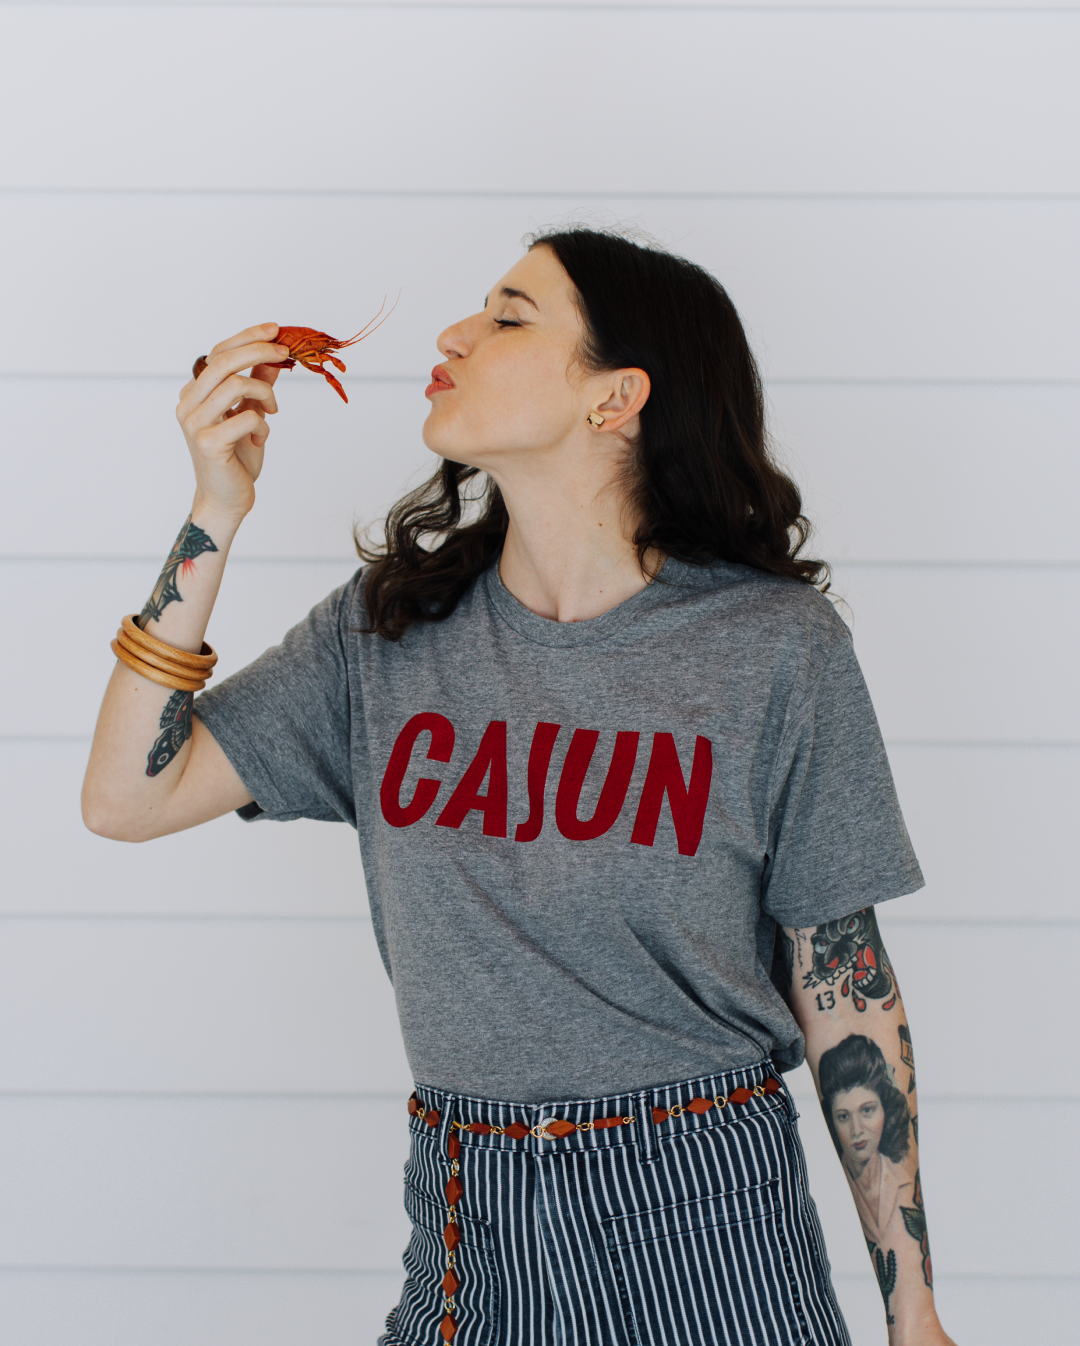 Crawfish  Louisiana Crawfish T-Shirts – Sweet Baton Rouge